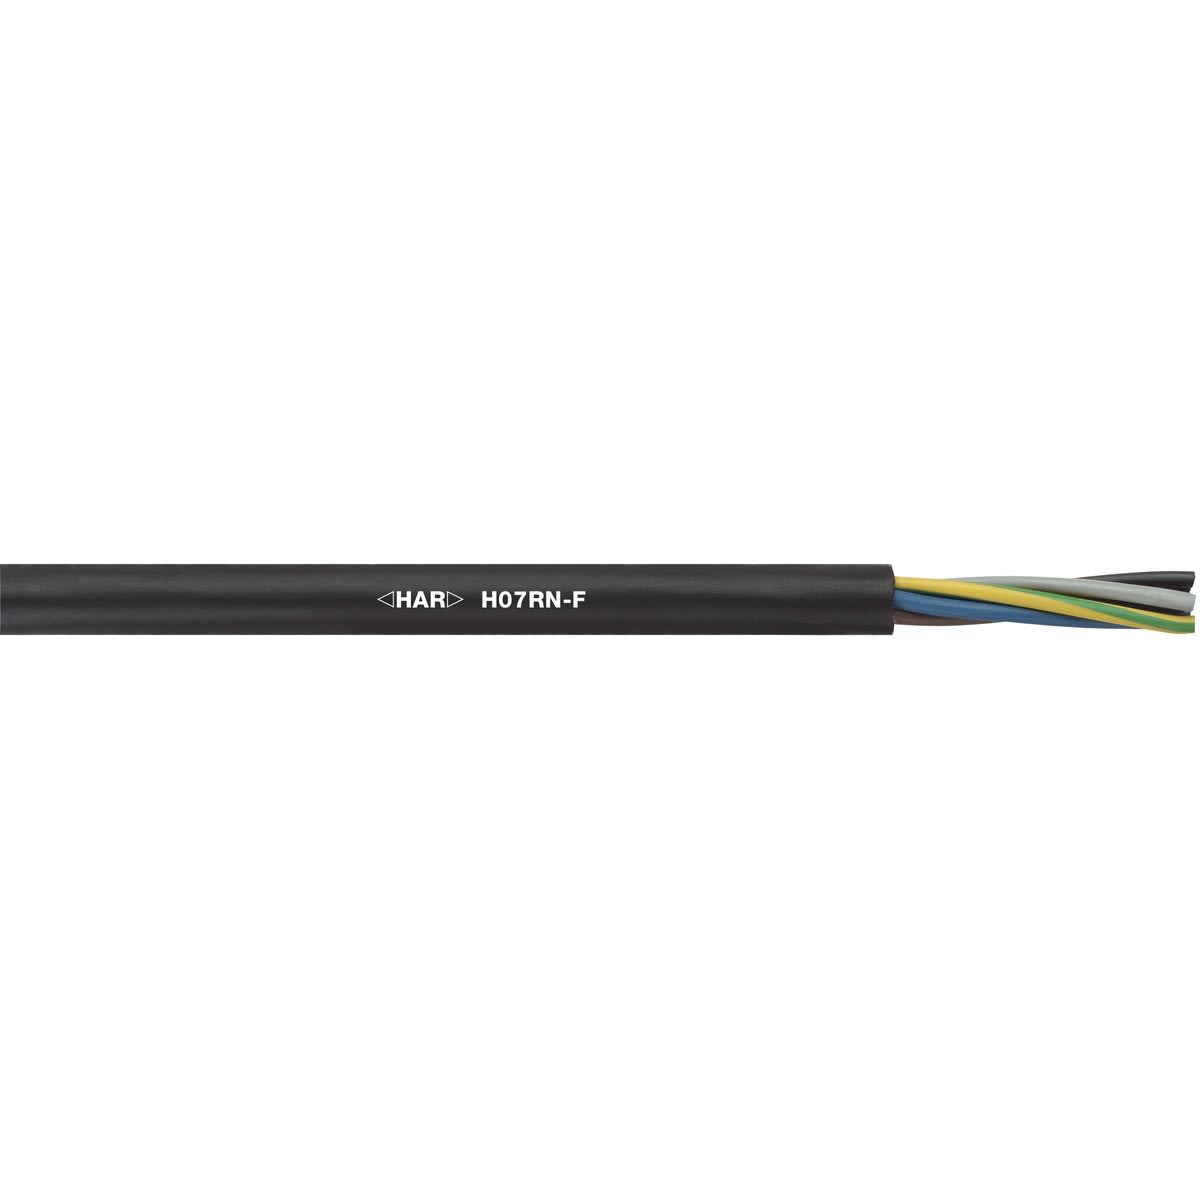 Cable électrique - Souple - H07 RNF - 5G6 mm² - Couronne de ..